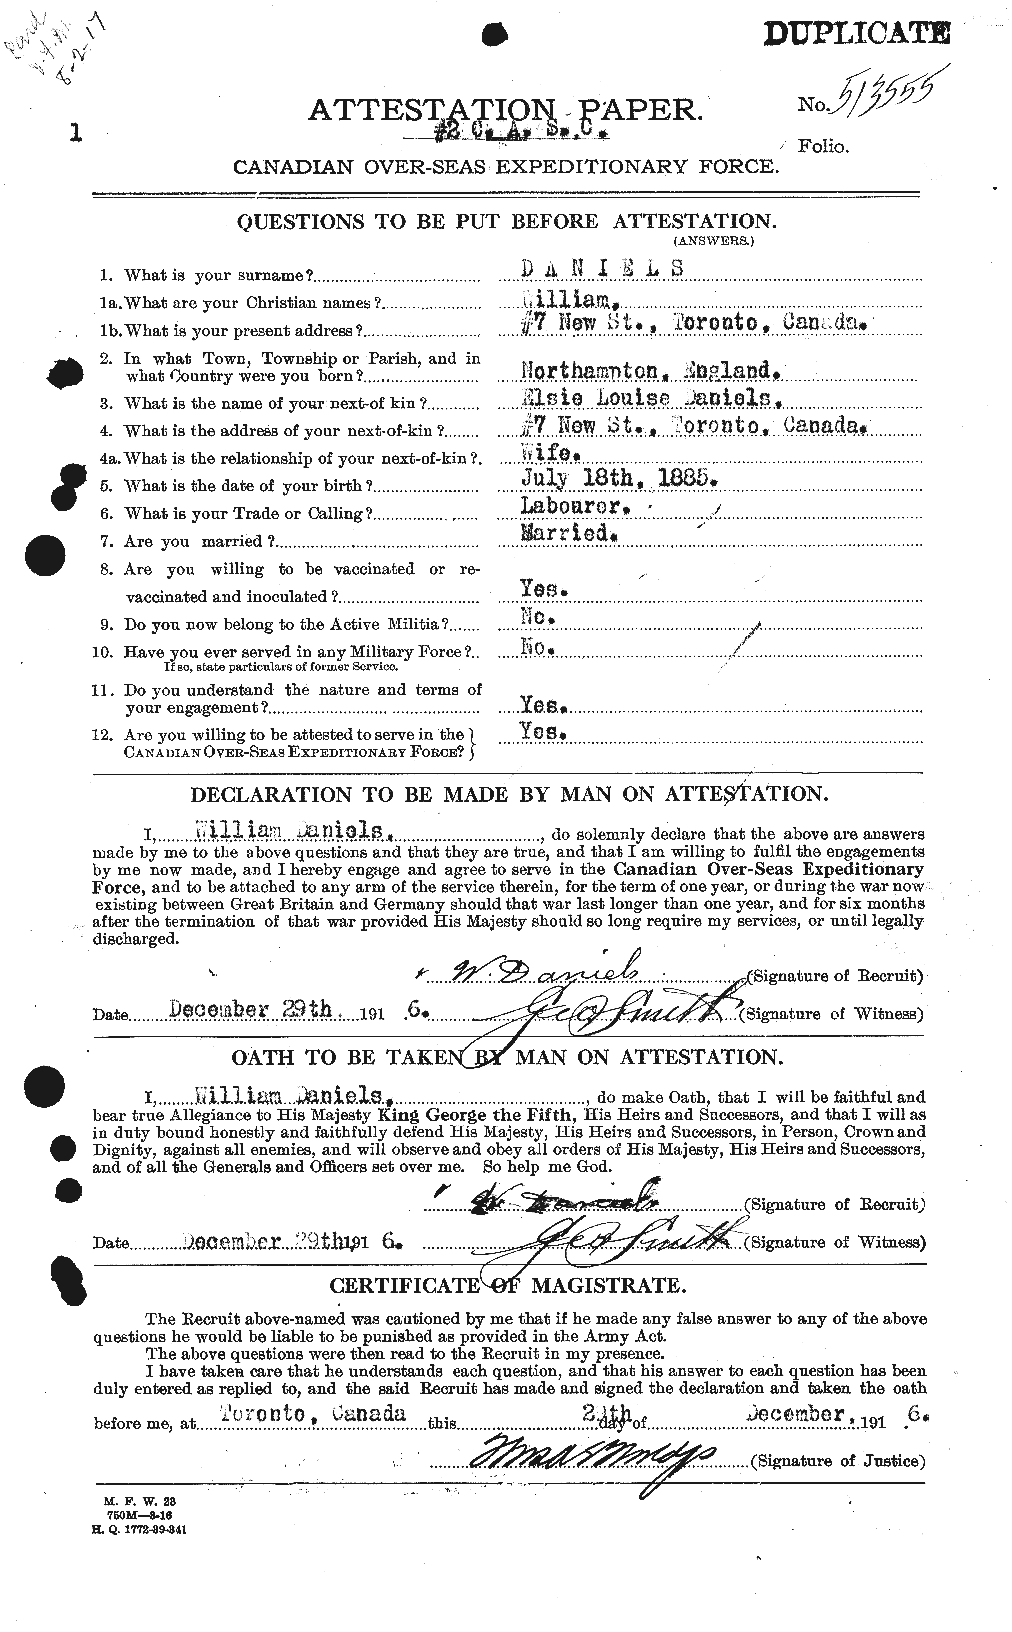 Dossiers du Personnel de la Première Guerre mondiale - CEC 279691a